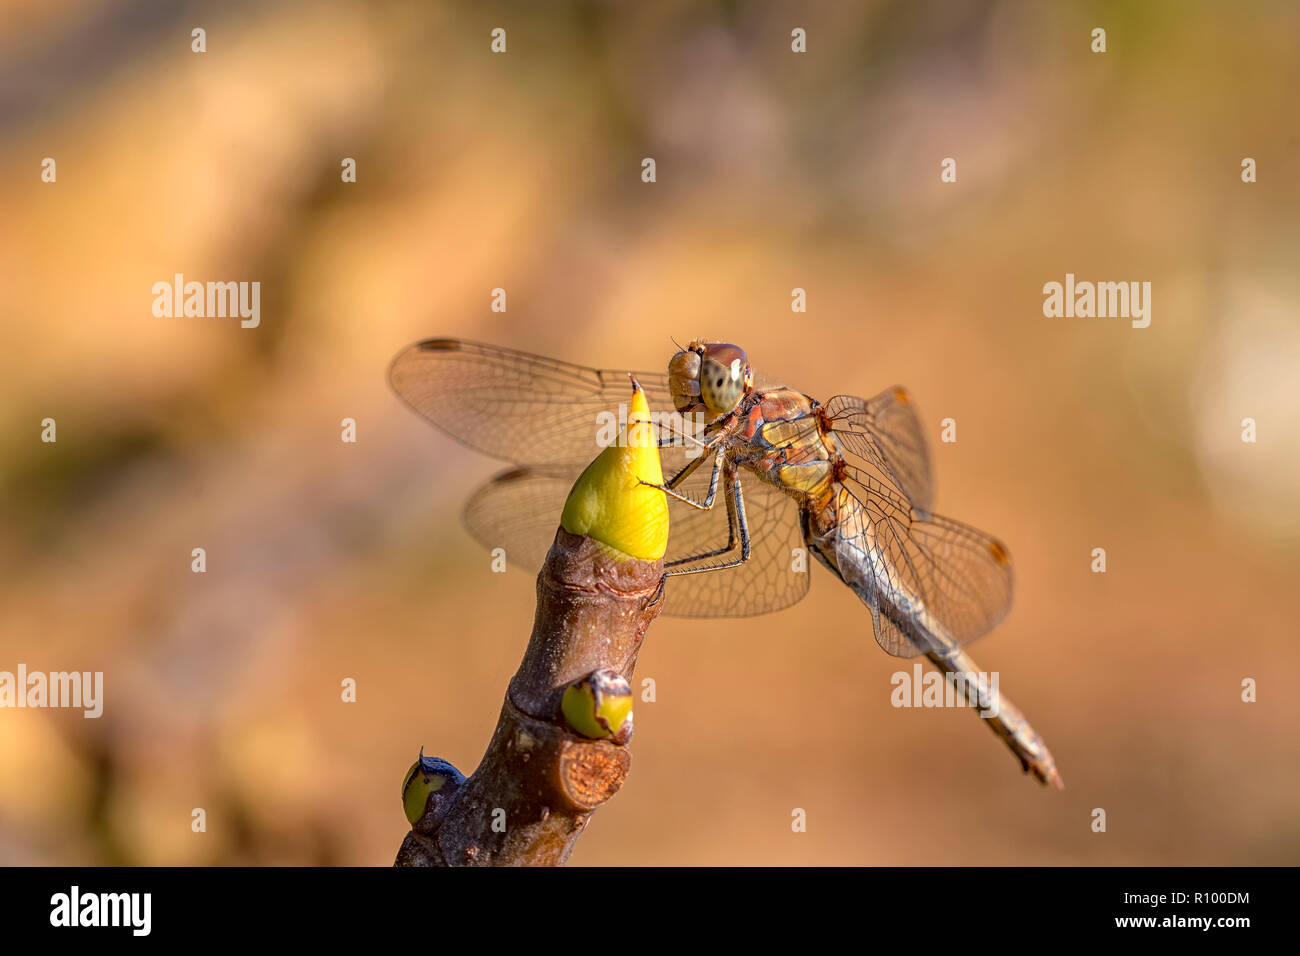 Belle macro de la libellule assis sur une branche. Une libellule est un insecte appartenant à l'ordre des odonates, infraordre Anisoptera. Banque D'Images